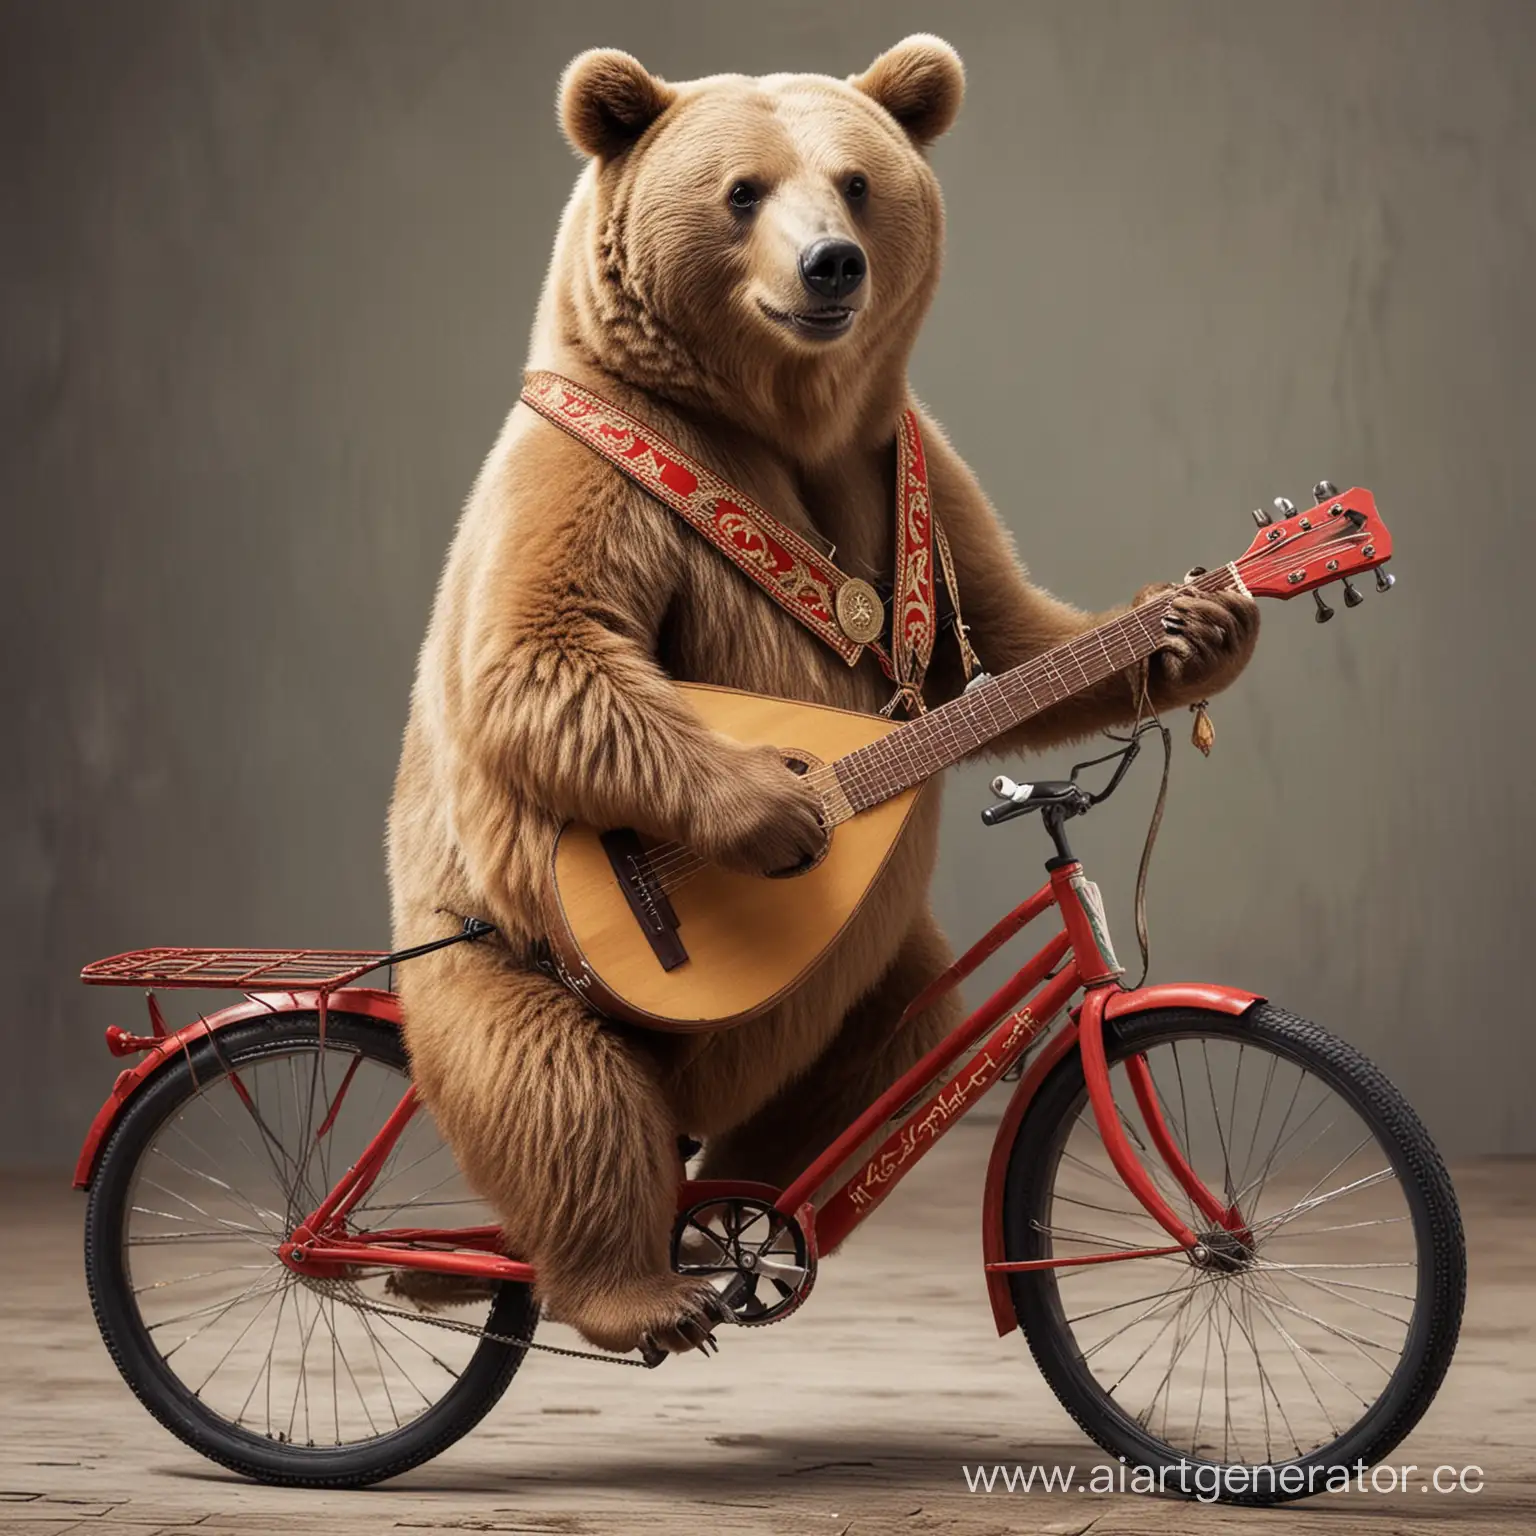 медведь едет на велосипеде, играет на балалайке, пьет водку